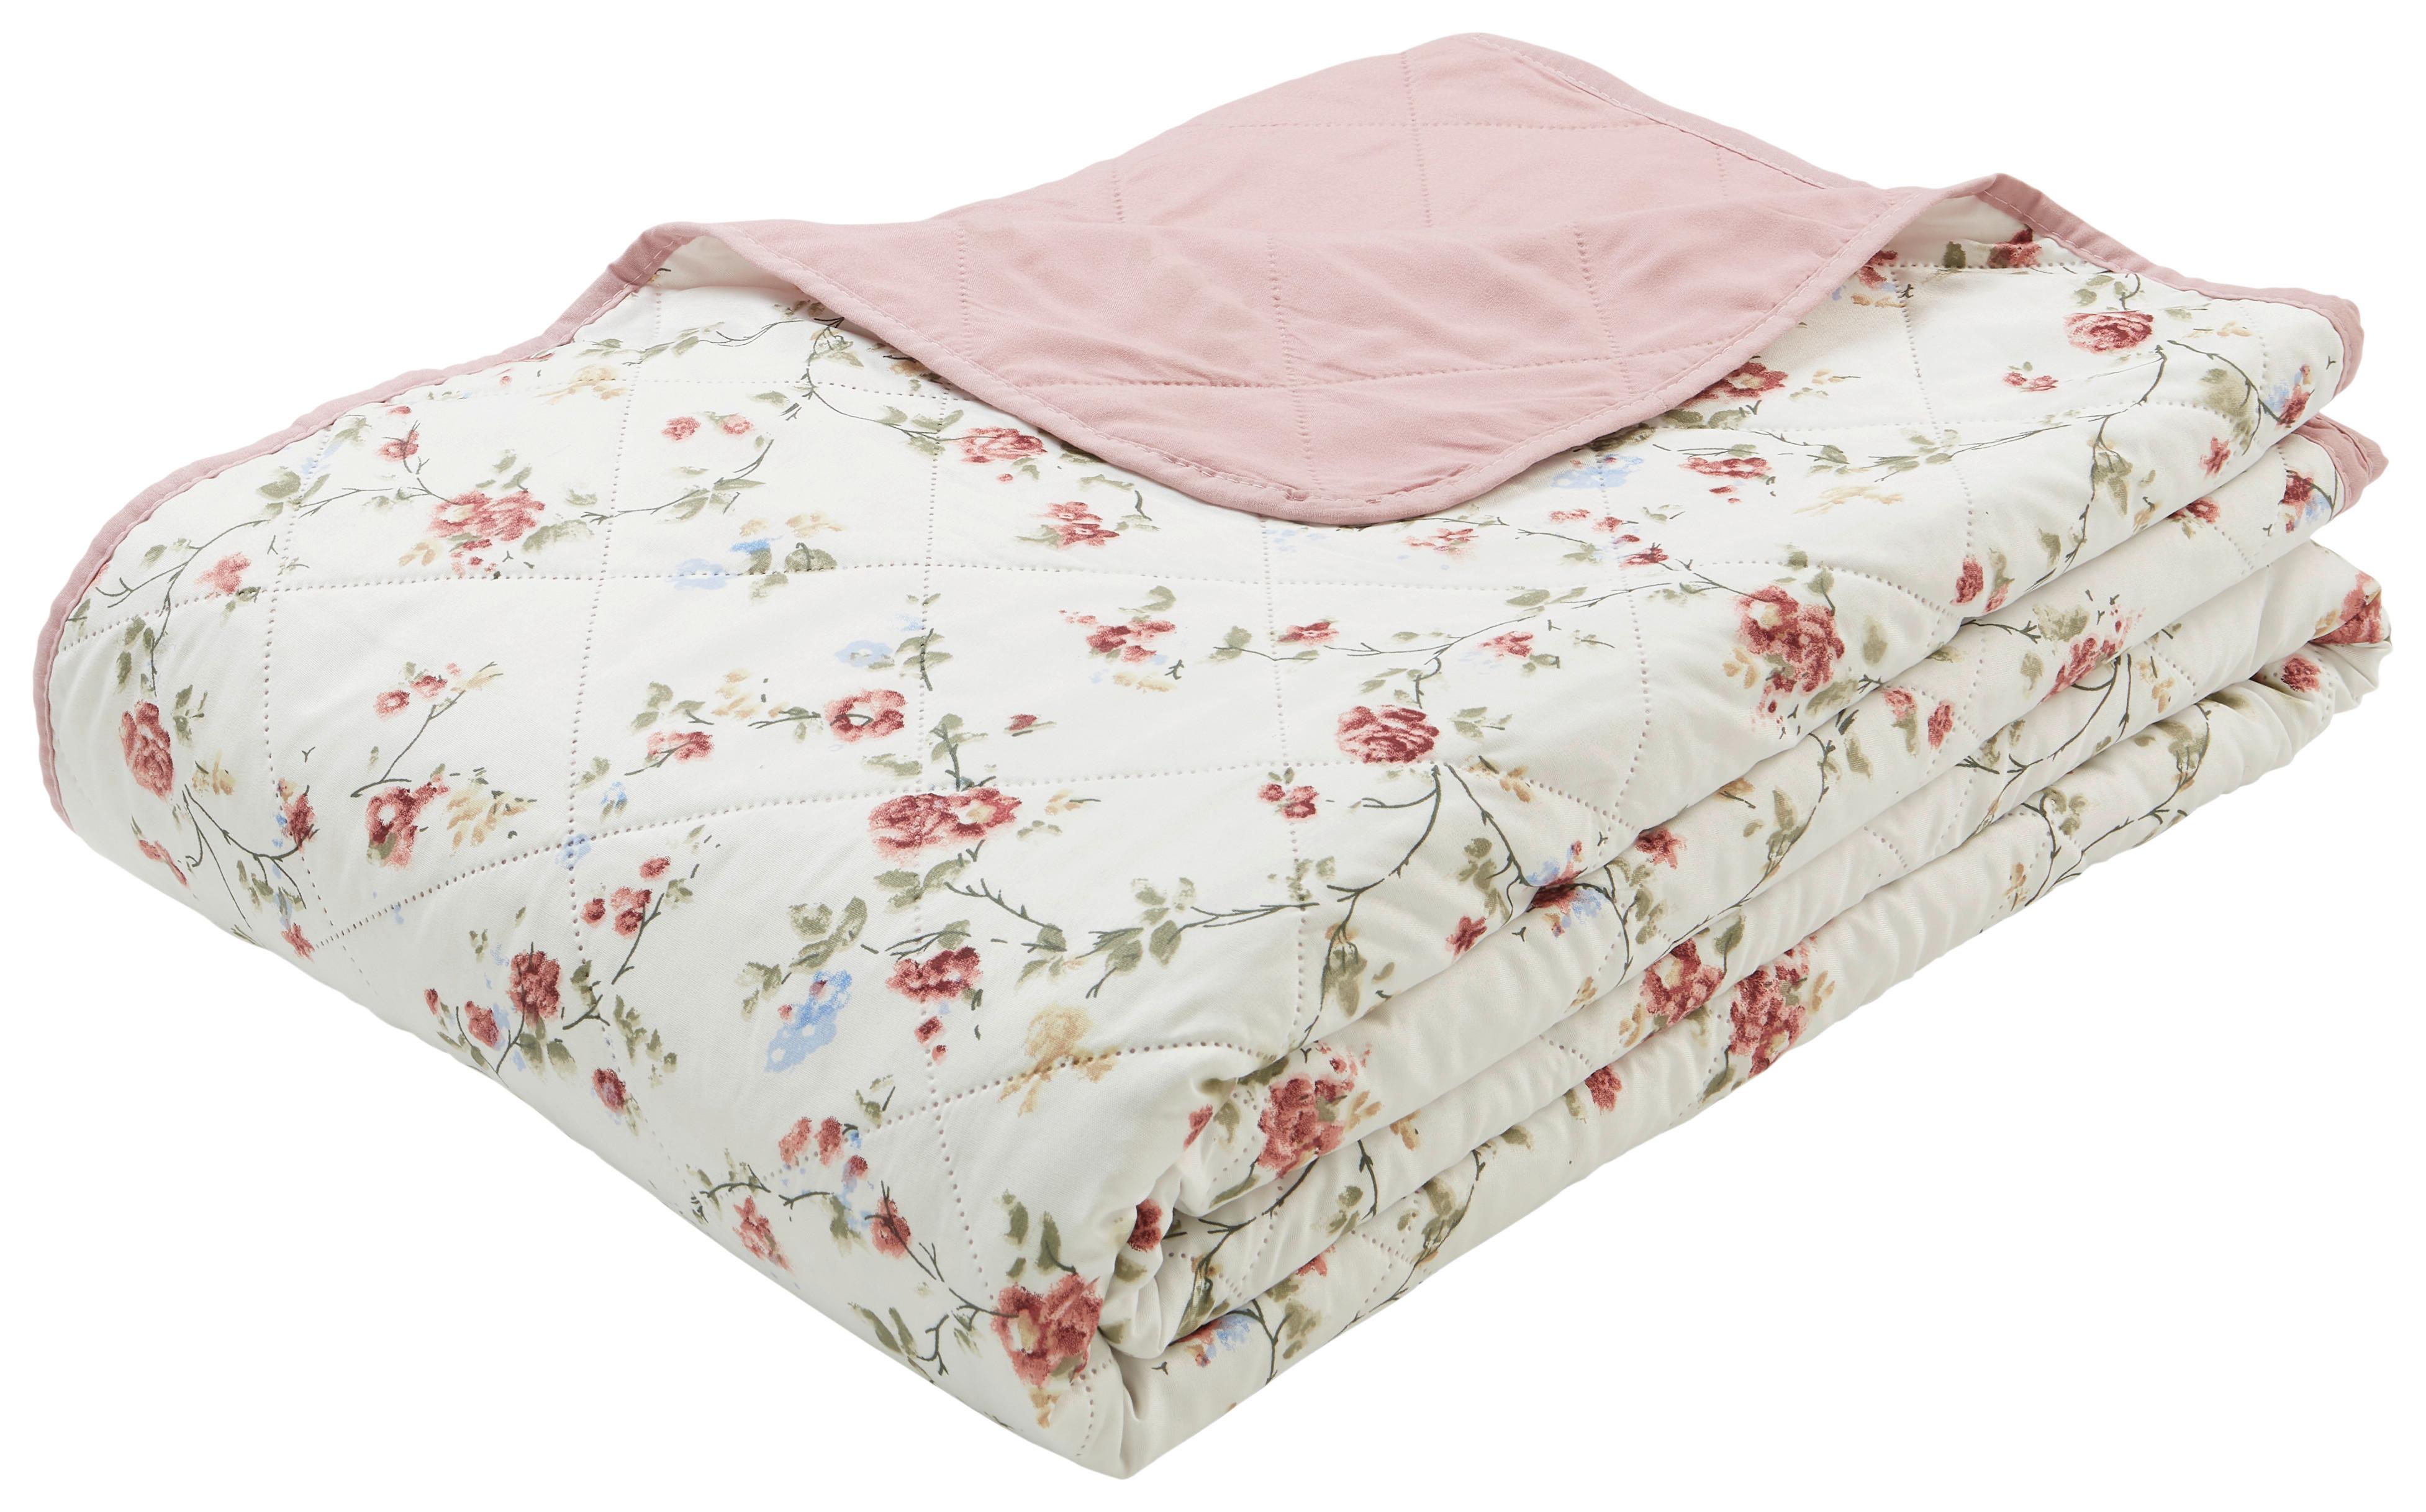 Přehoz Florina - bílá/tmavě růžová, Romantický / Rustikální, textil (220/240cm) - Modern Living